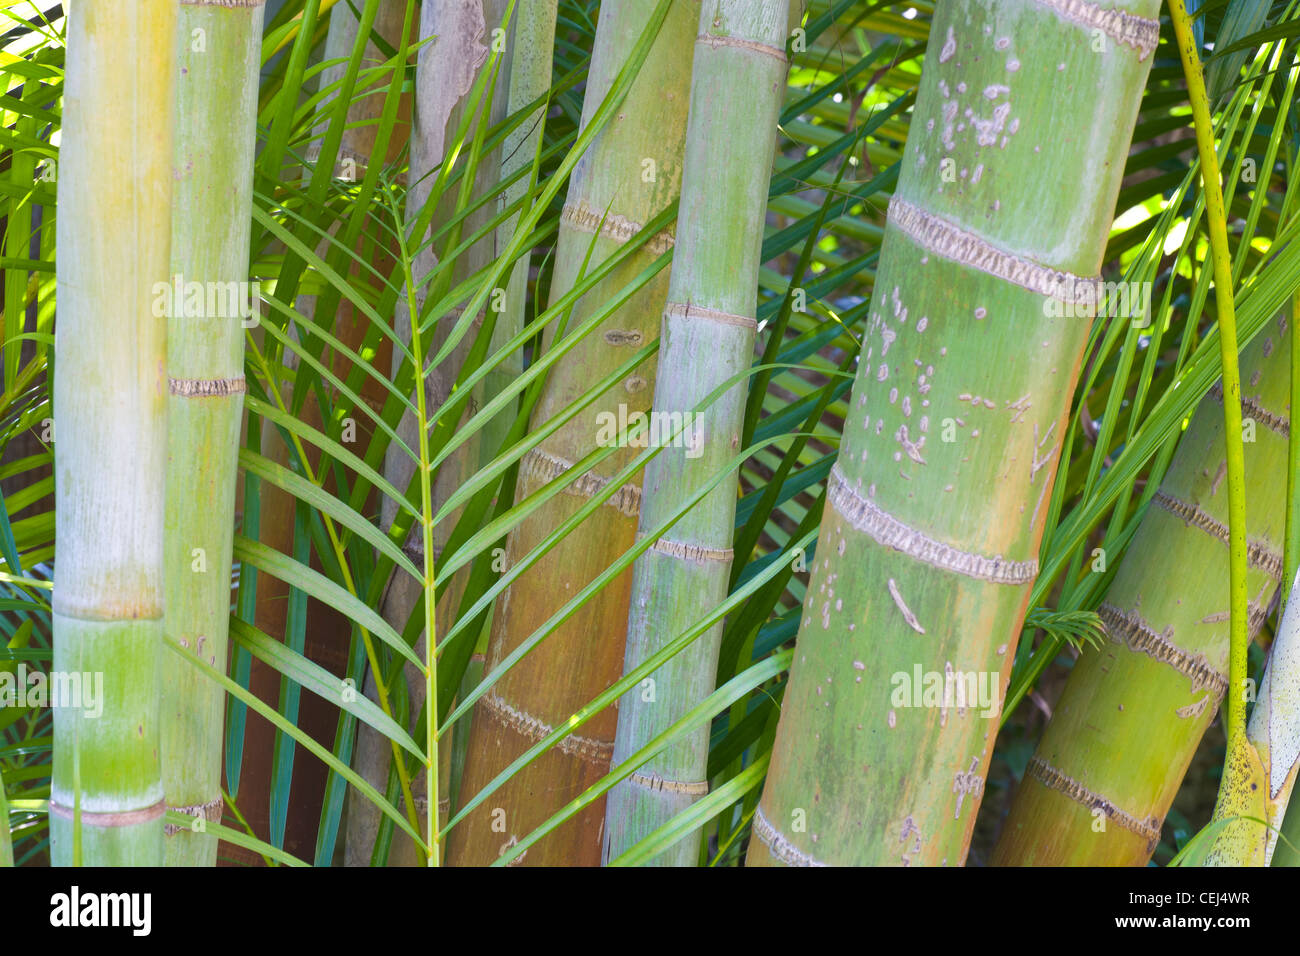 Bambusartige Stiele Stockfotos und -bilder Kaufen - Alamy